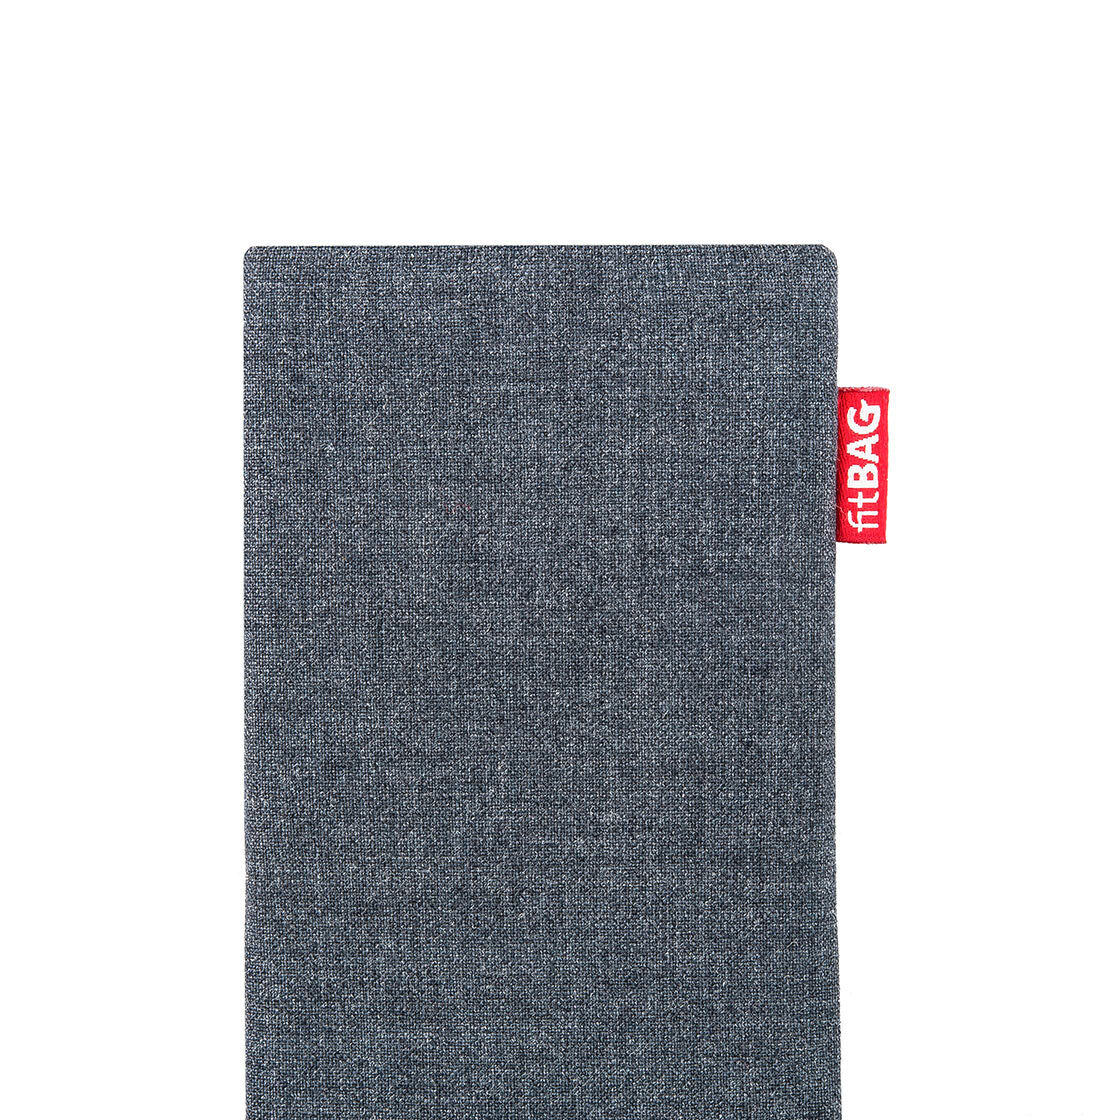 Hülle mit Reinigungsfunktion Mi 6X fitBAG Jive Grau Handytasche Tasche aus Textil-Stoff mit Microfaserinnenfutter für Xiaomi Mi A2 Made in Germany